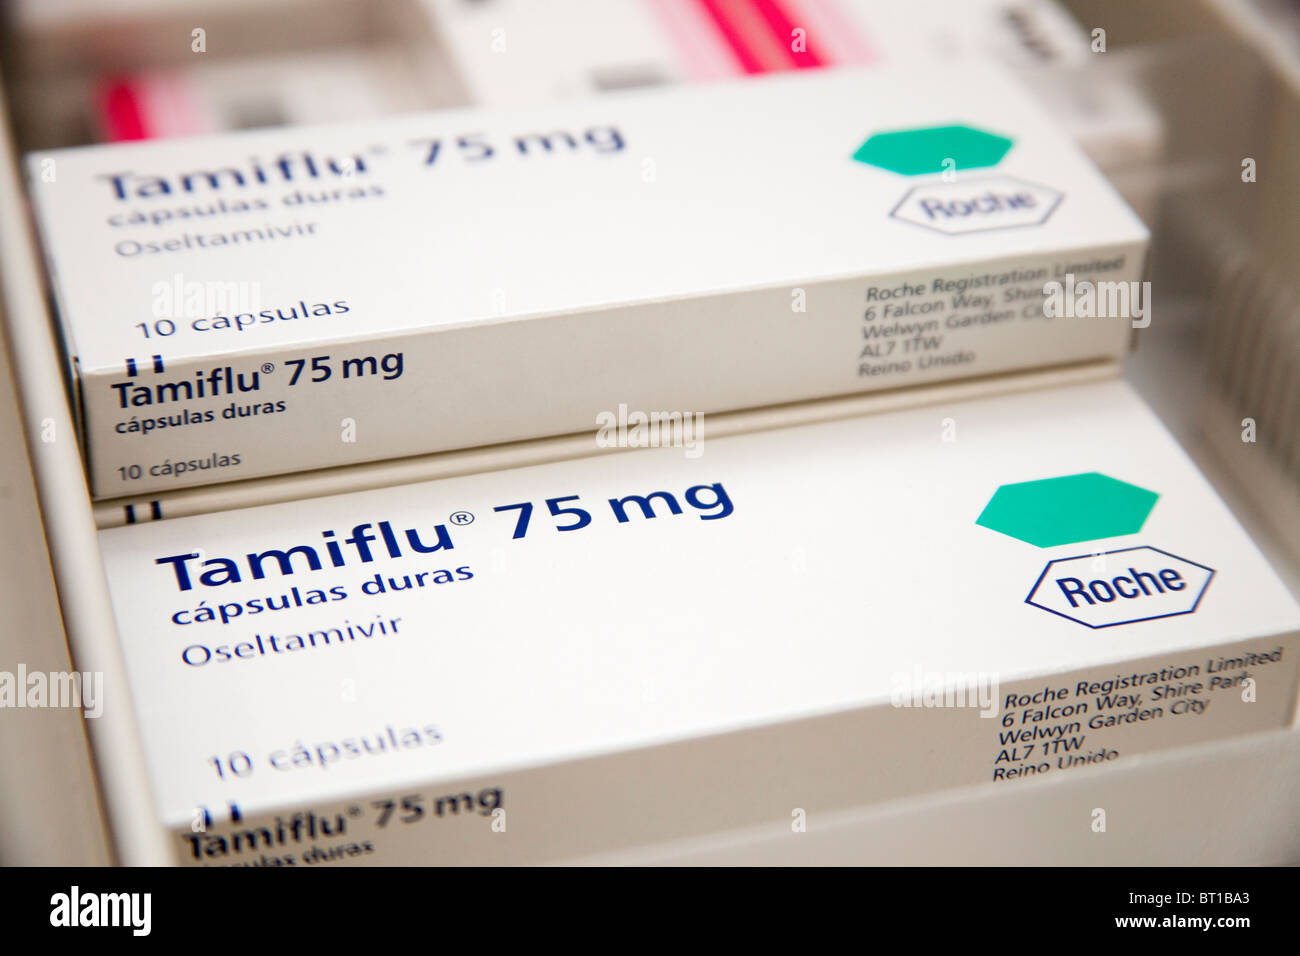 Añada una definición Tamiflu en anu farmacia Tamiflu medicina en una farmacia Foto de stock